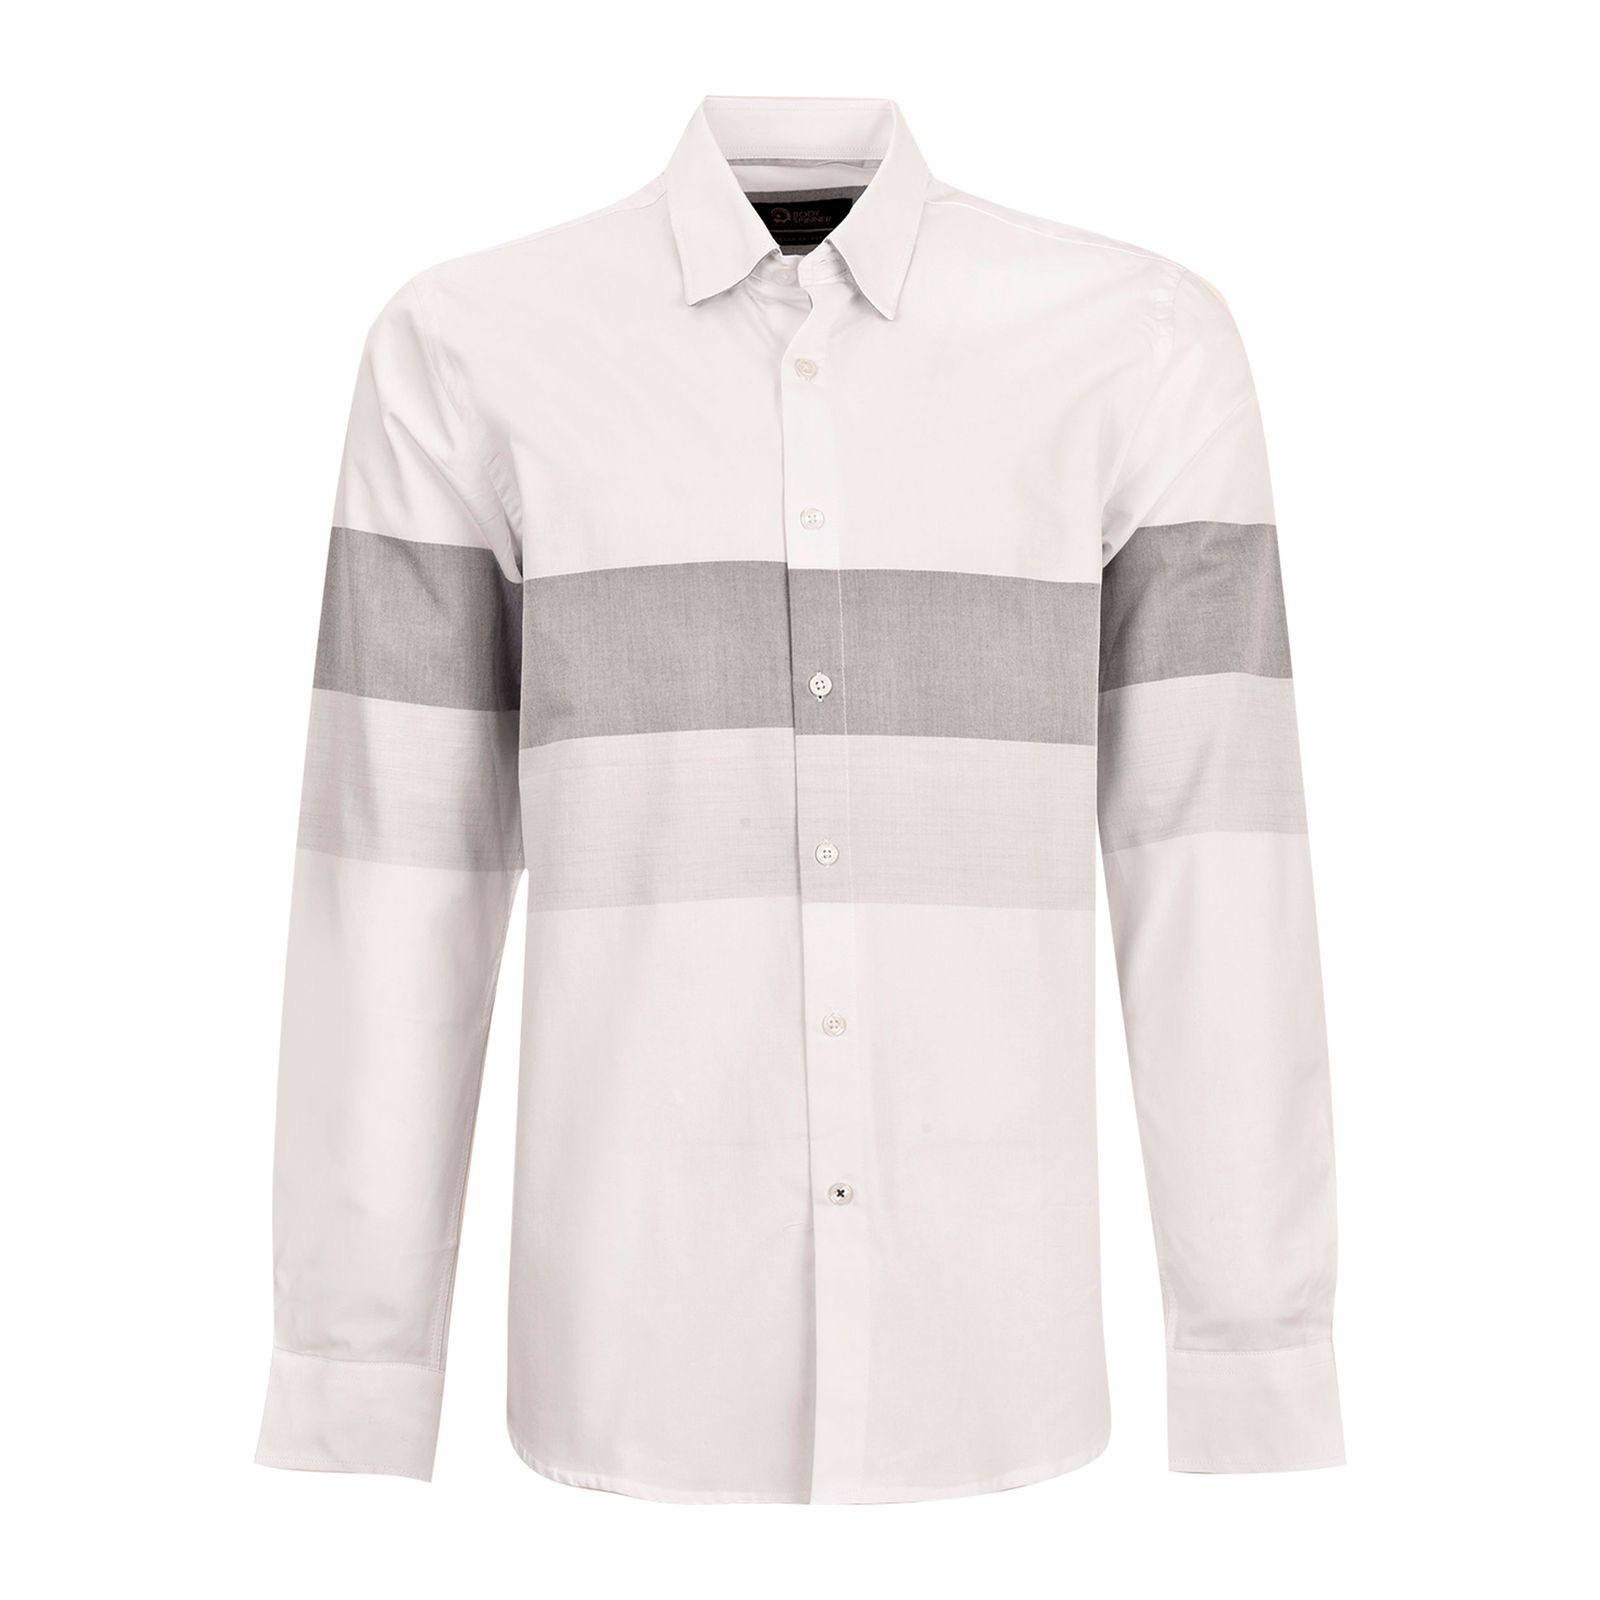 پیراهن آستین بلند مردانه بادی اسپینر مدل 3996 کد 1 رنگ سفید -  - 1